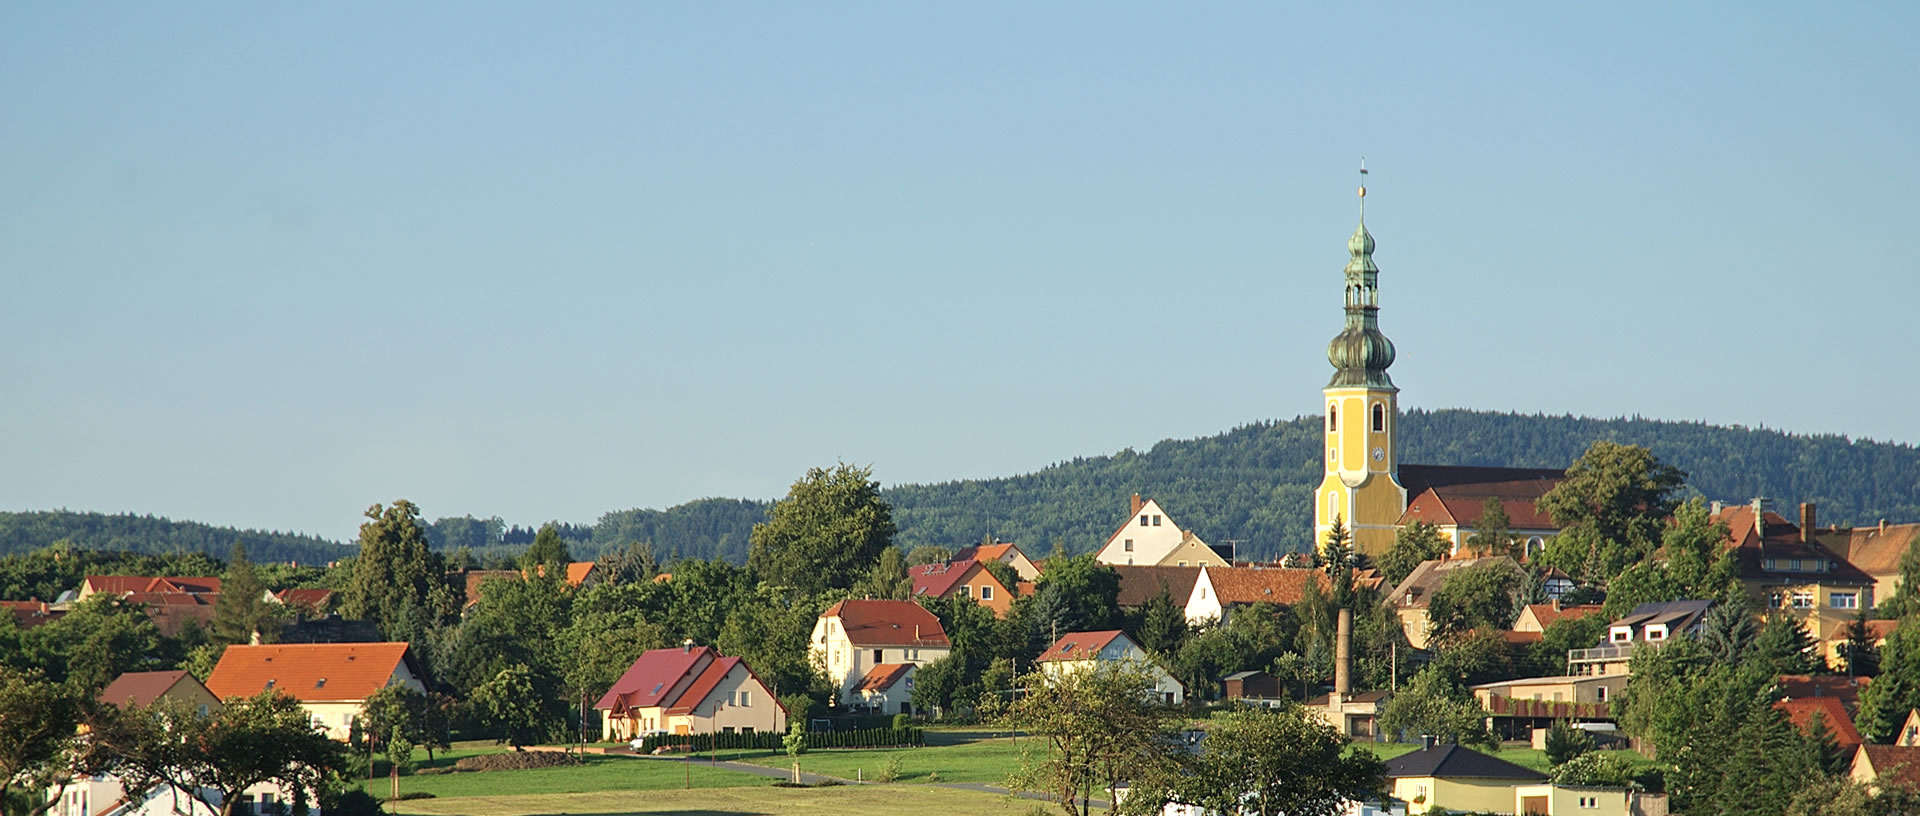 Hochkirch liegt östlich von Bautzen in der Oberlausitz im Osten des Freistaates Sachsen